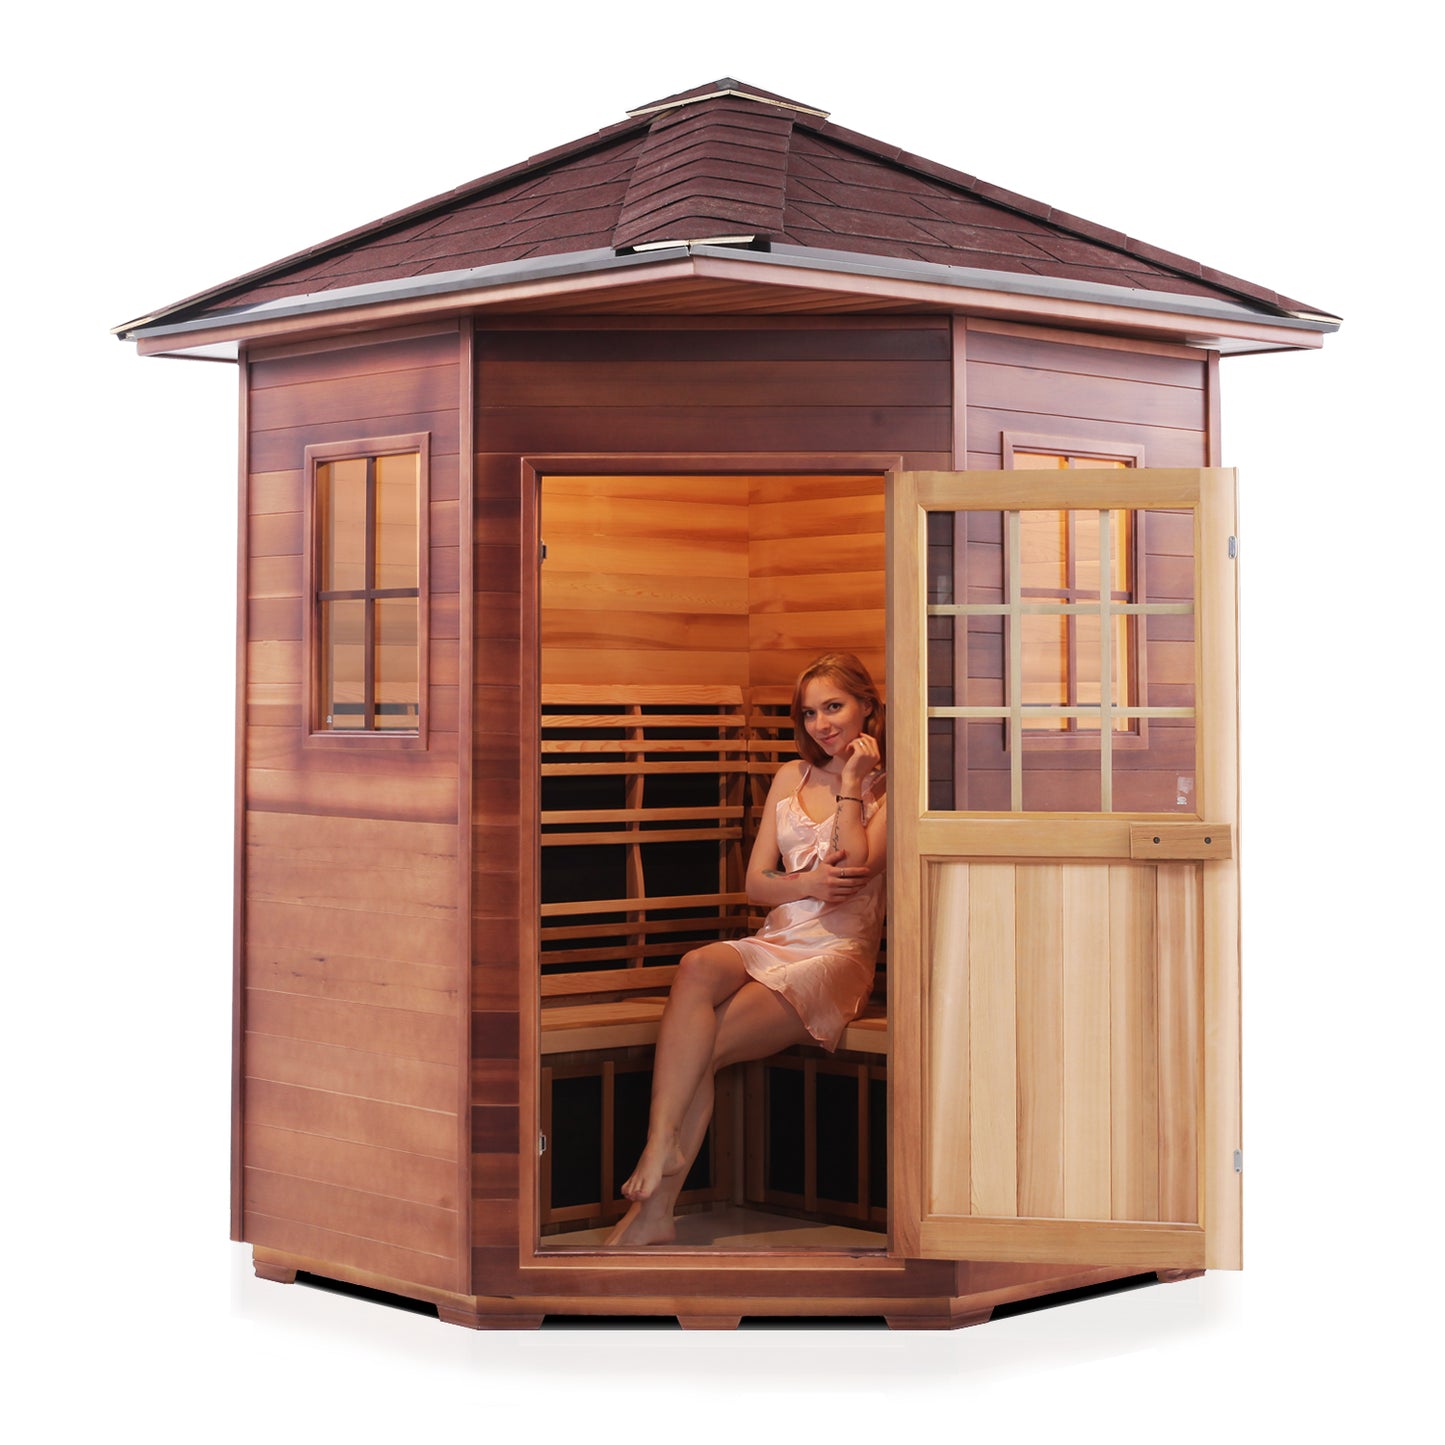 Sierra-C Outdoor Infrared Sauna